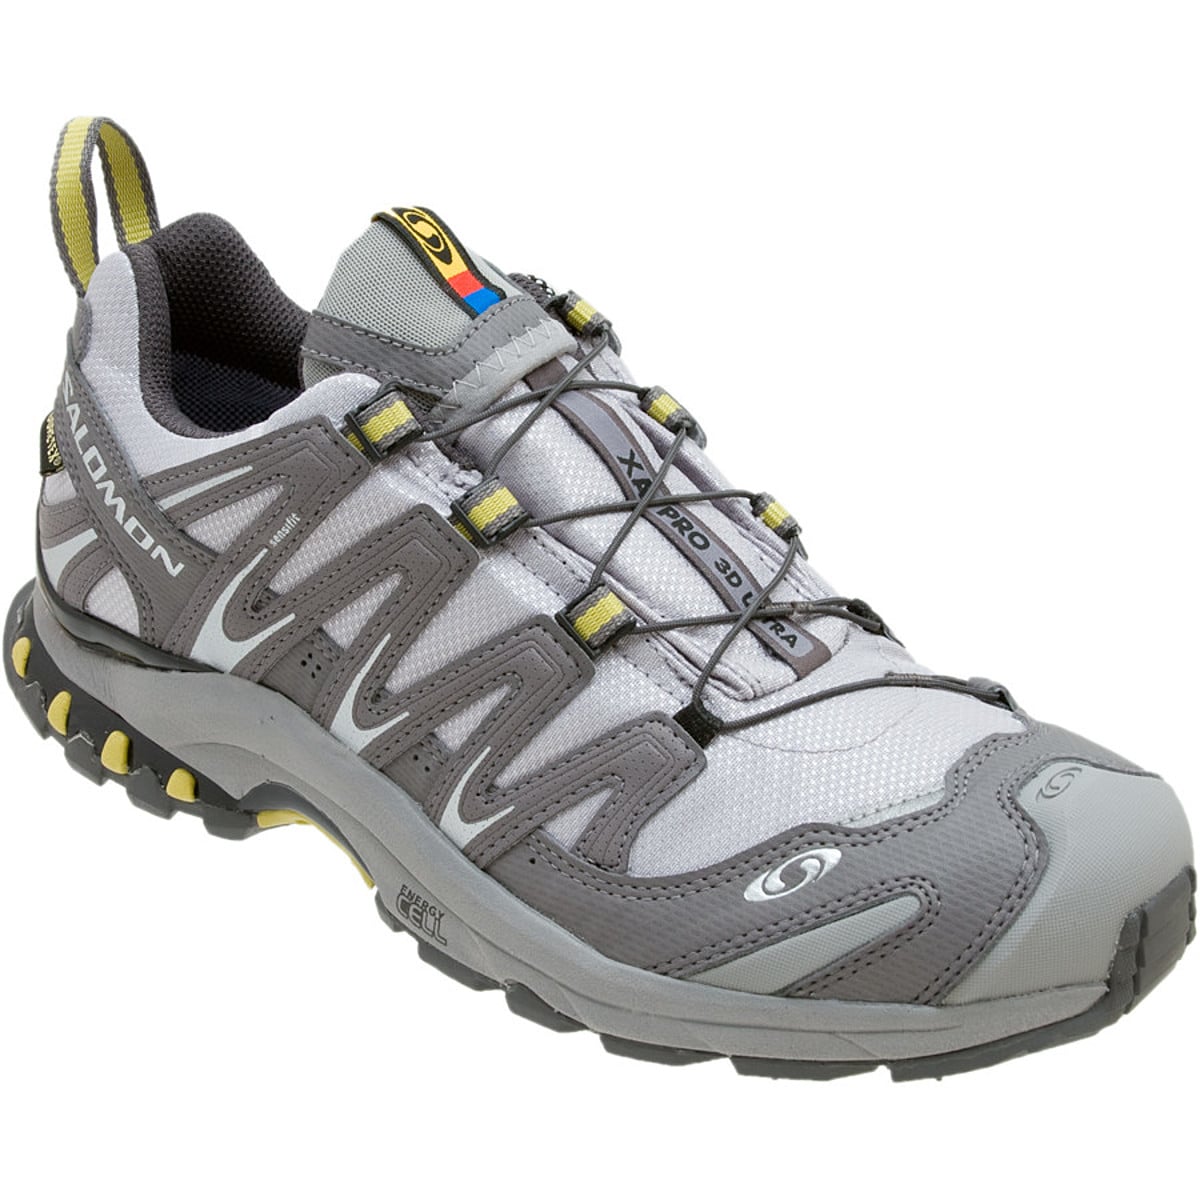 Salomon XA Pro Ultra GTX Trail Running Shoe - Women's - Footwear